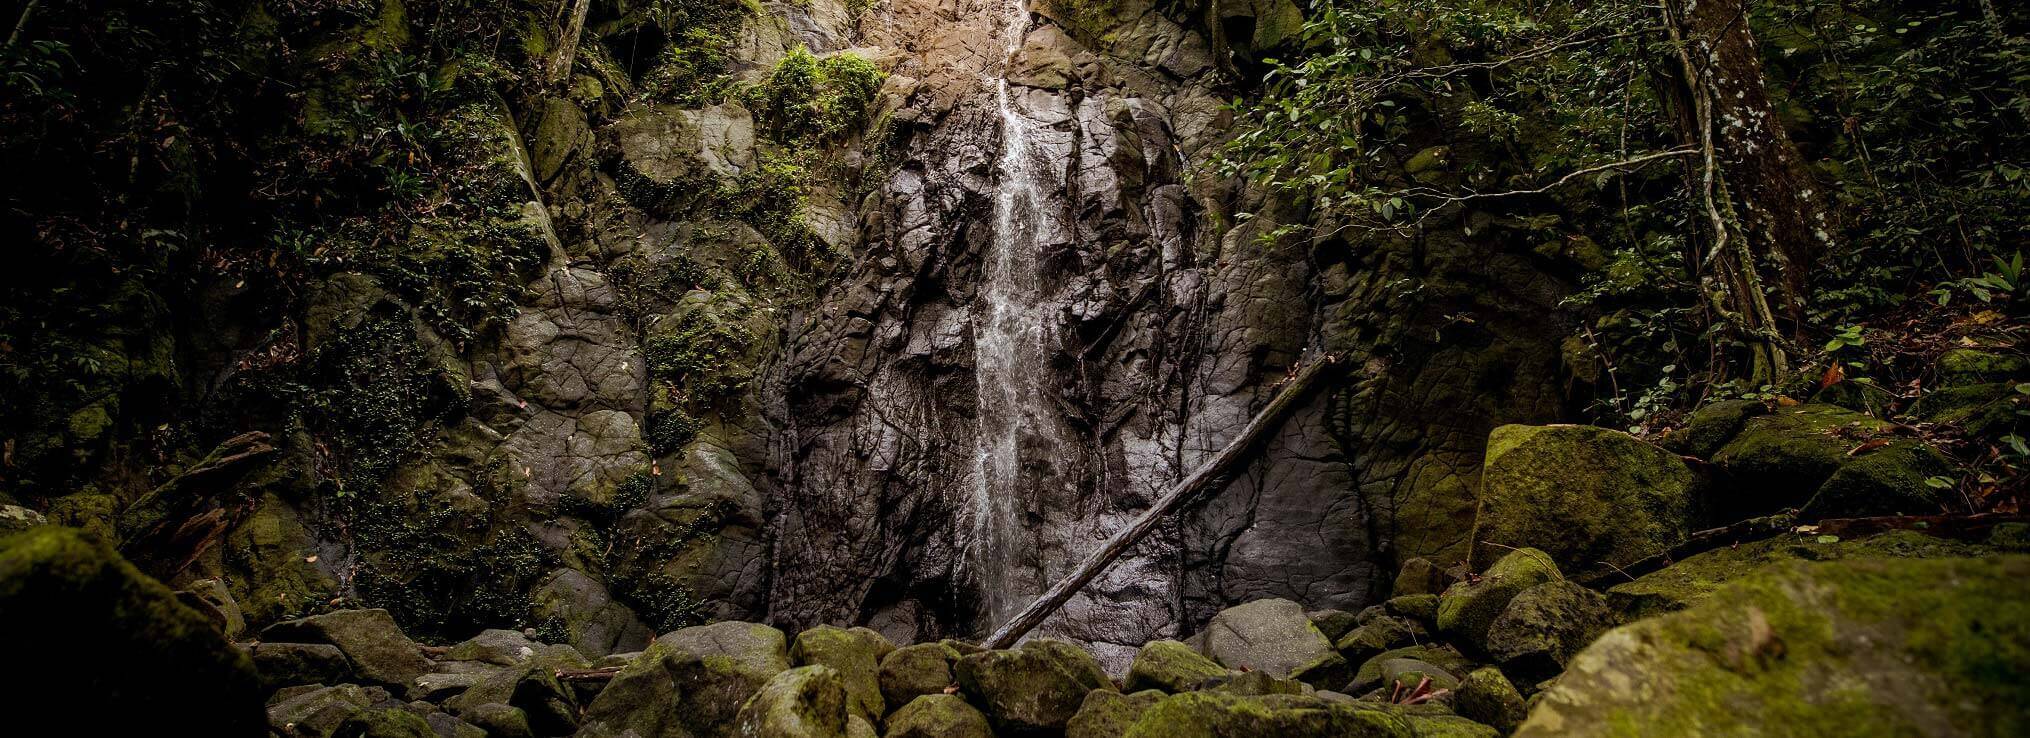 Waterfall Raja Ampat